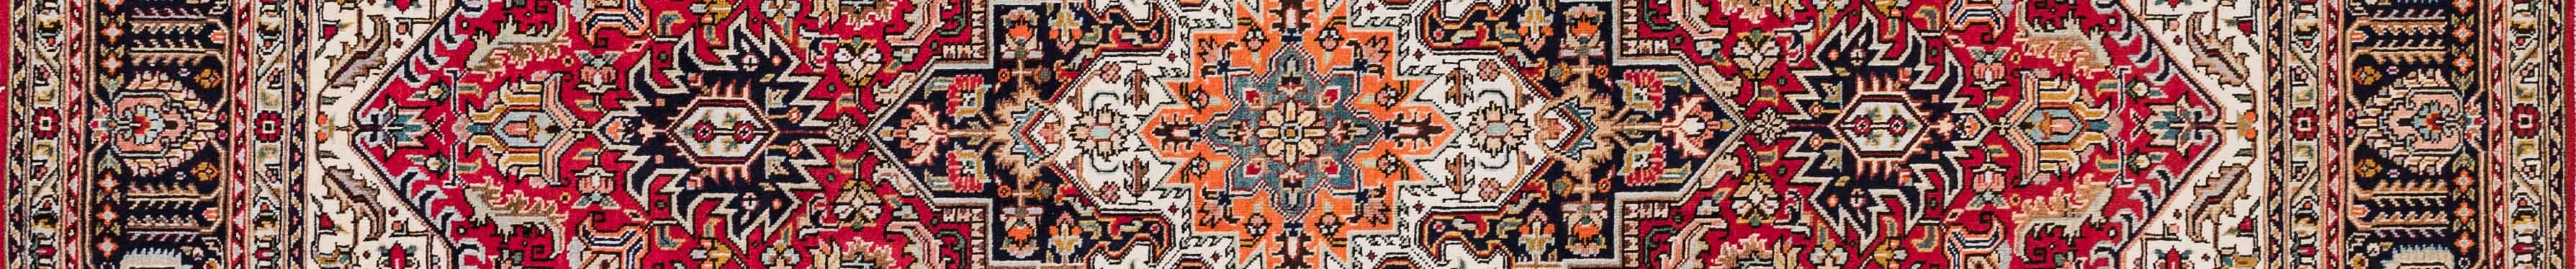 Tabriz Persian Carpet Rug N1Carpet Canada Montreal Tapis Persan 1850